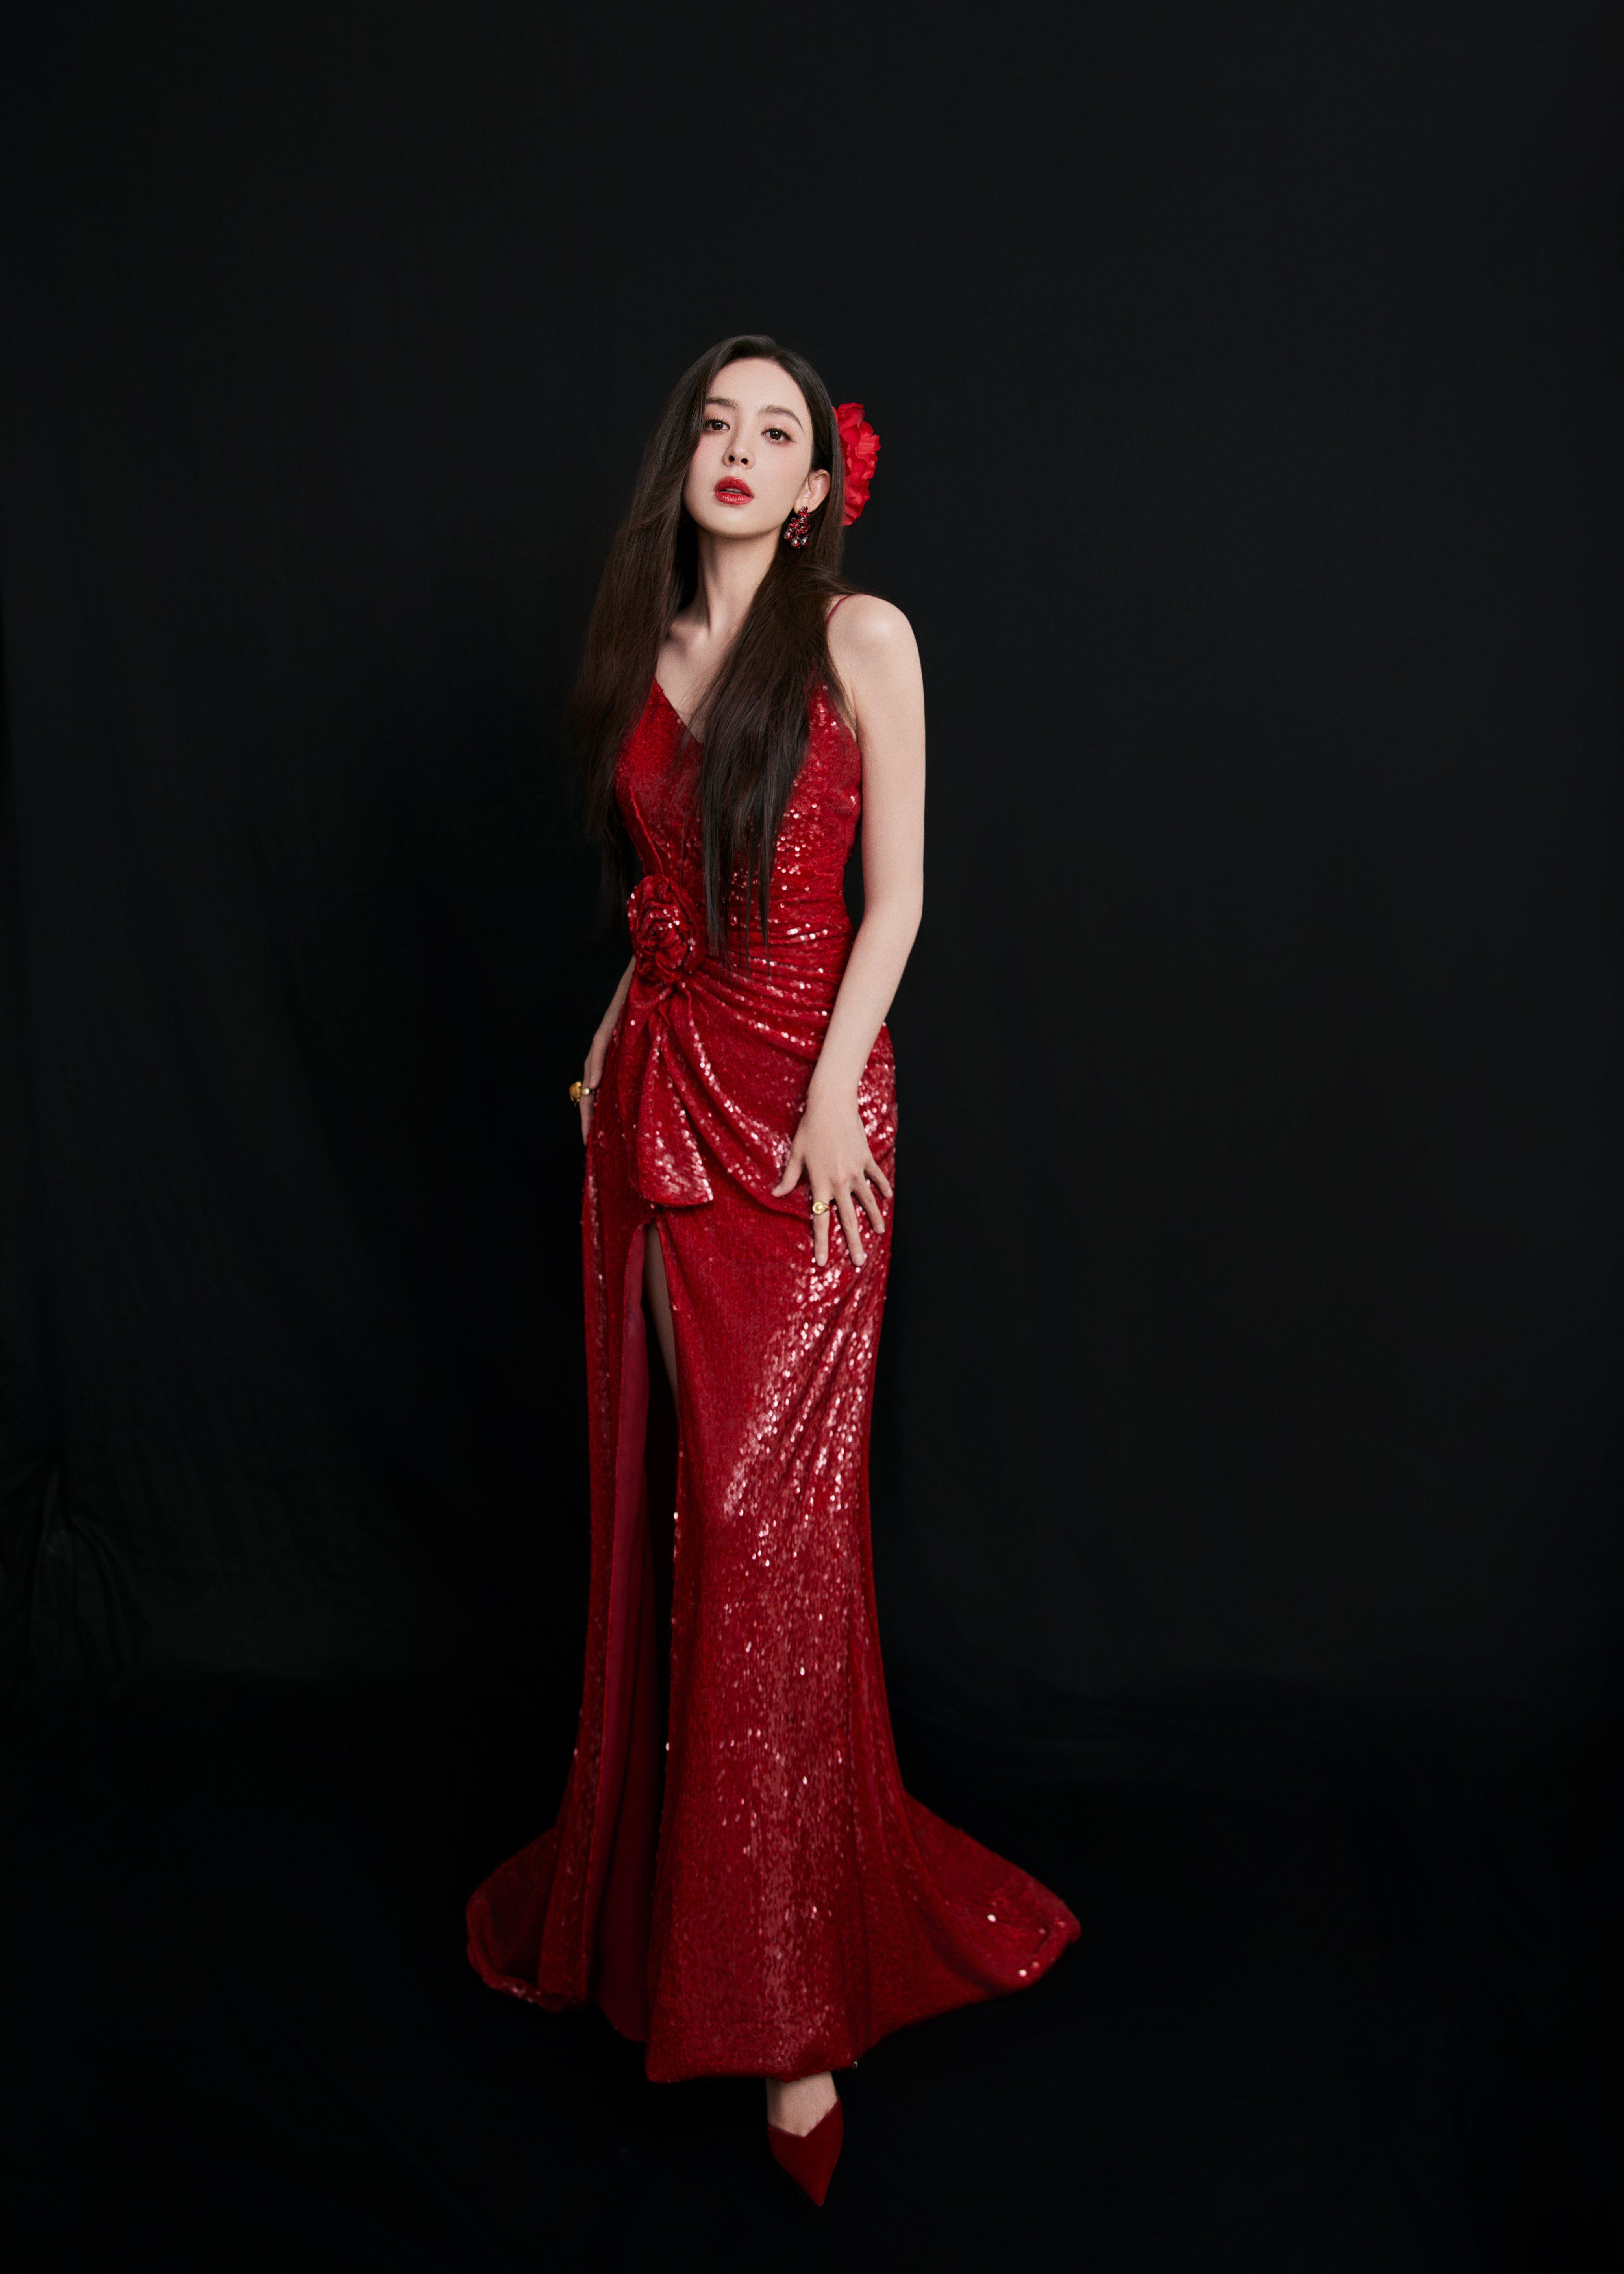 古力娜扎美照送达 红色吊带裸背礼服裙如明艳的红玫瑰,1 (3)